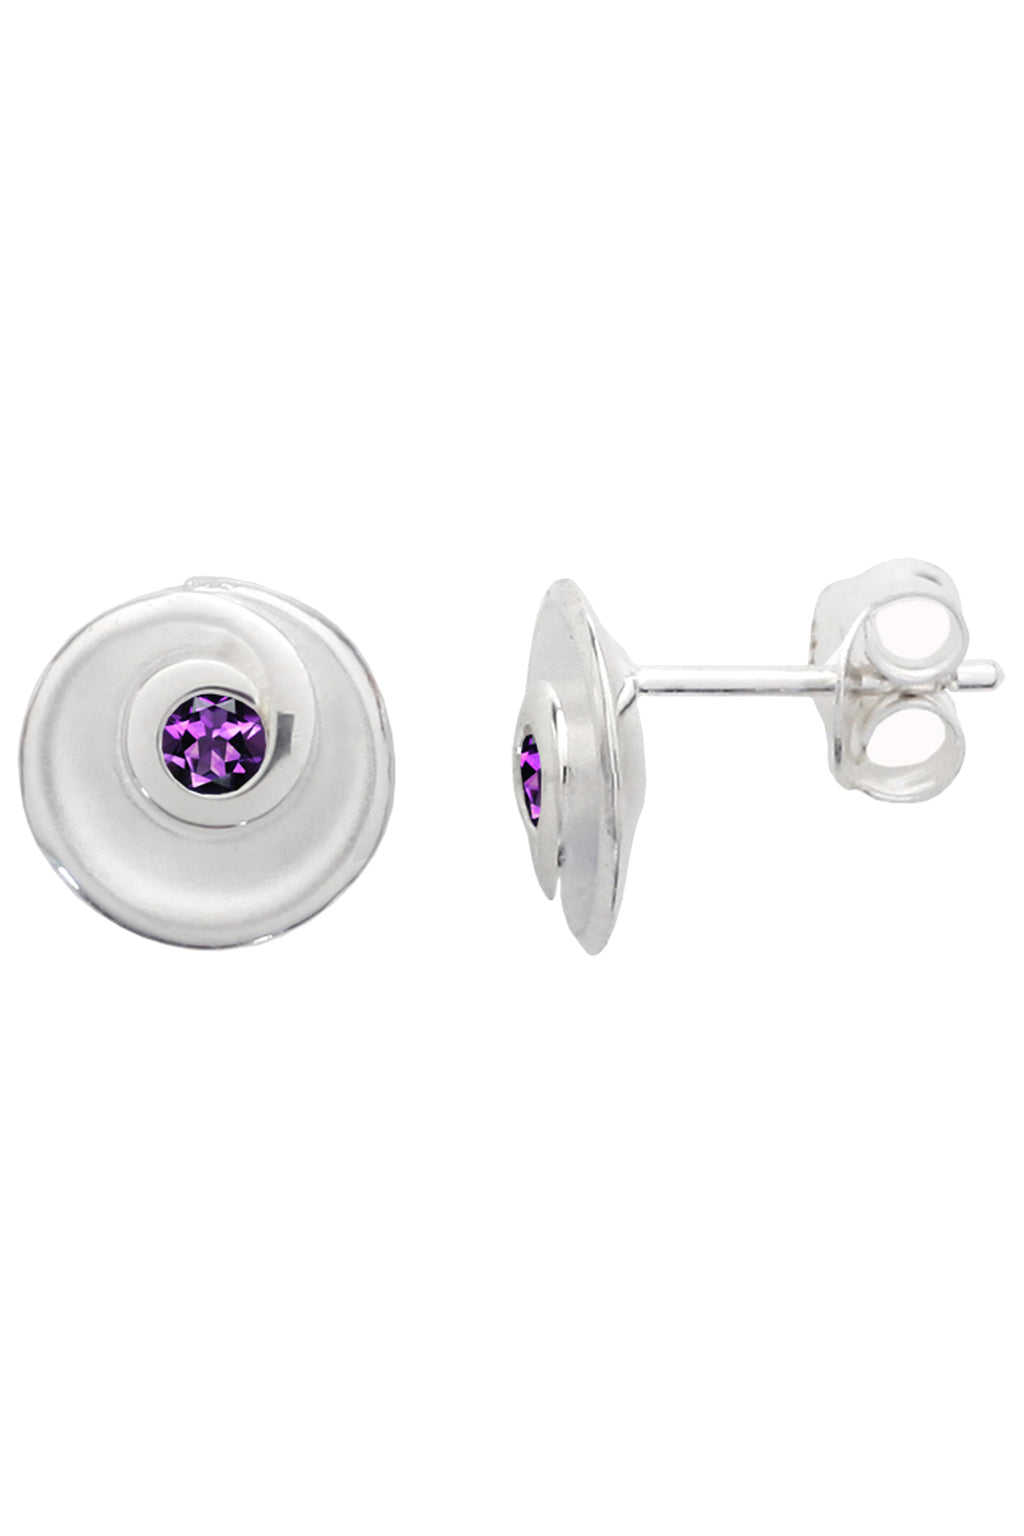 Silver Swirl Stud Earrings with Amethyst